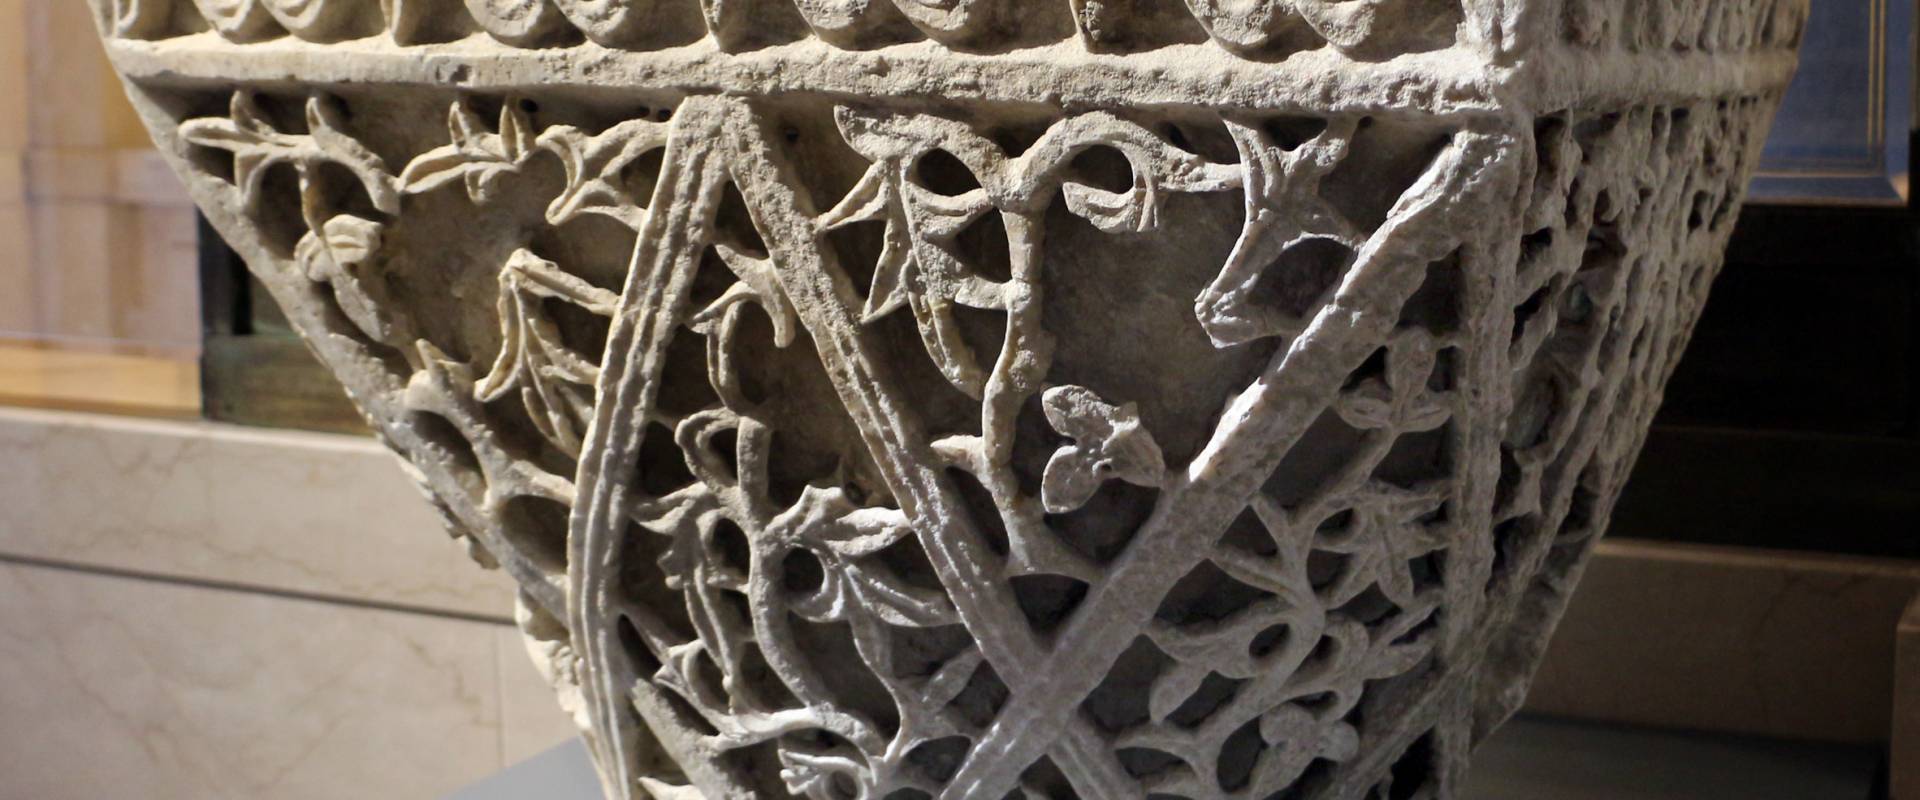 Area costantinopolitana, capitello imposta a paniere, VI secolo (ravenna, museo nazionale) 02 foto di Sailko